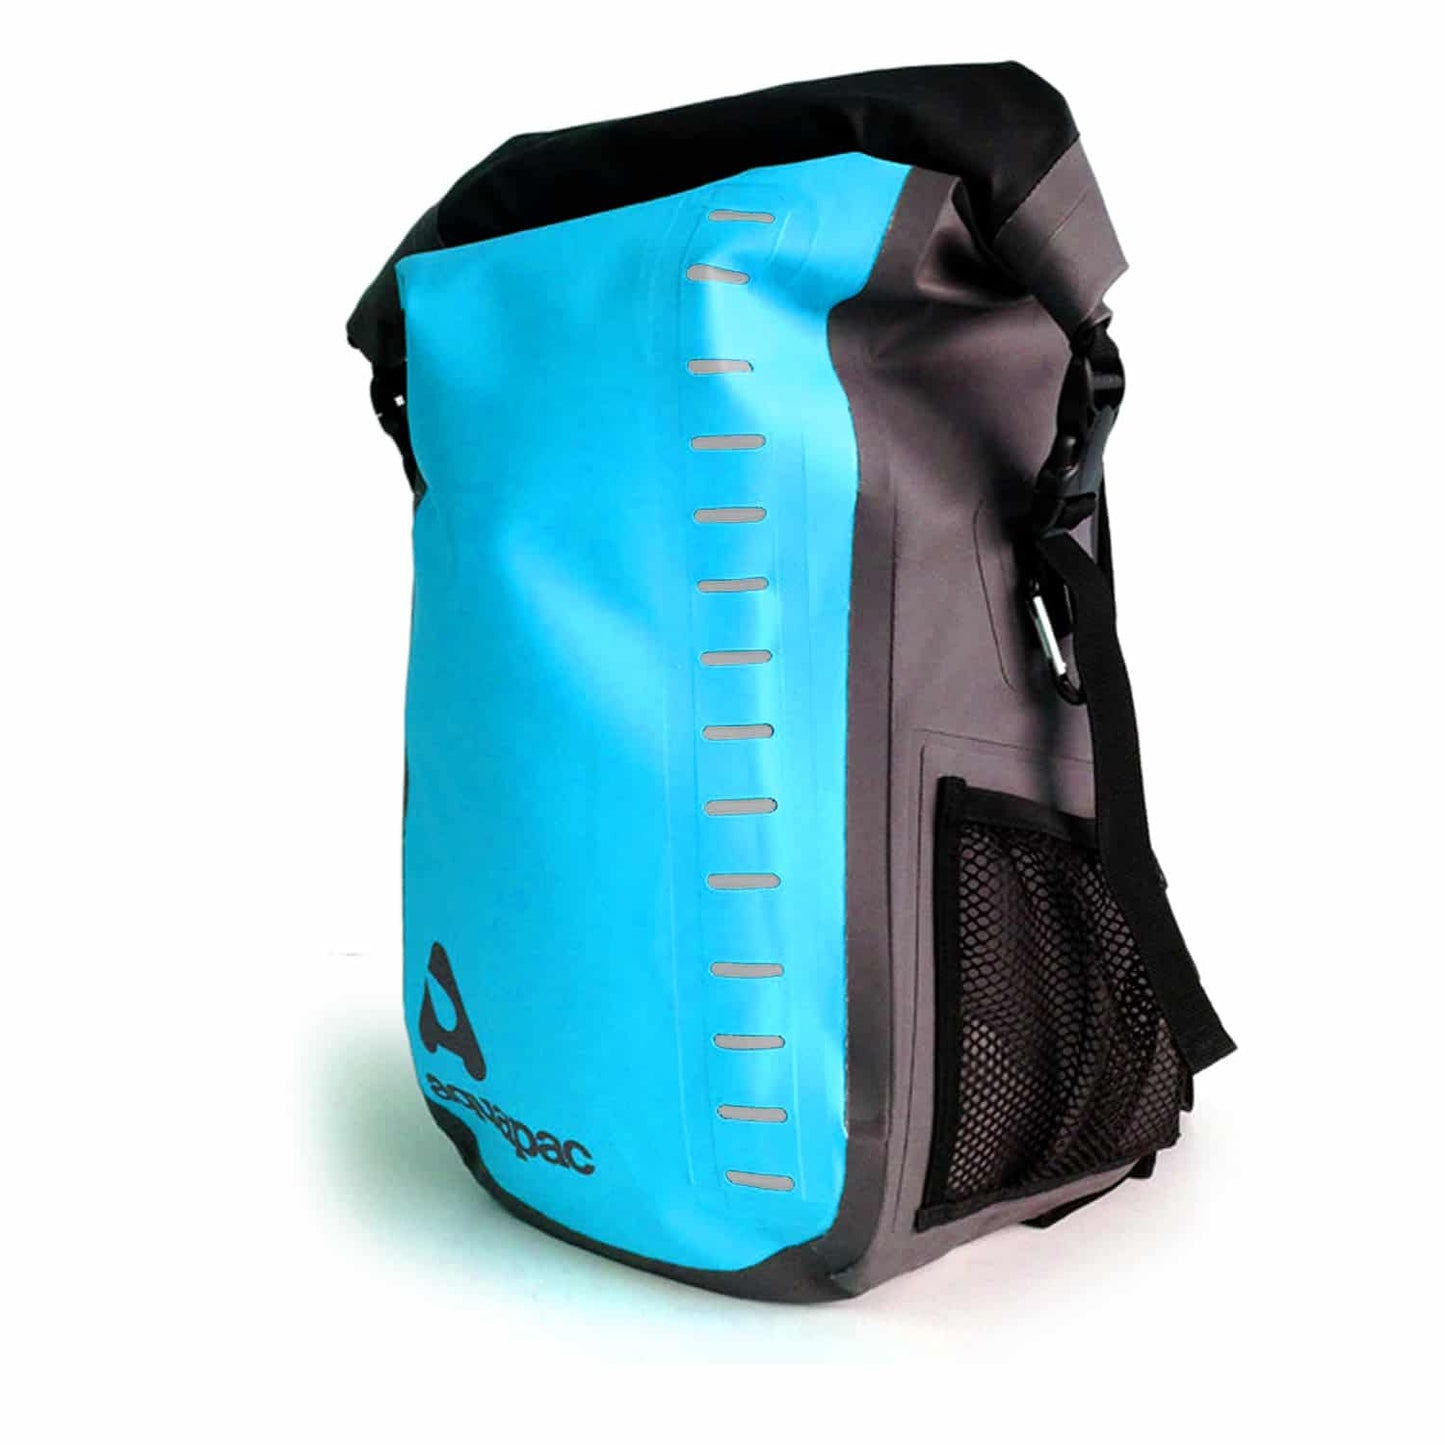 Aquapac Toccoa Waterproof 28 Litres Backpack